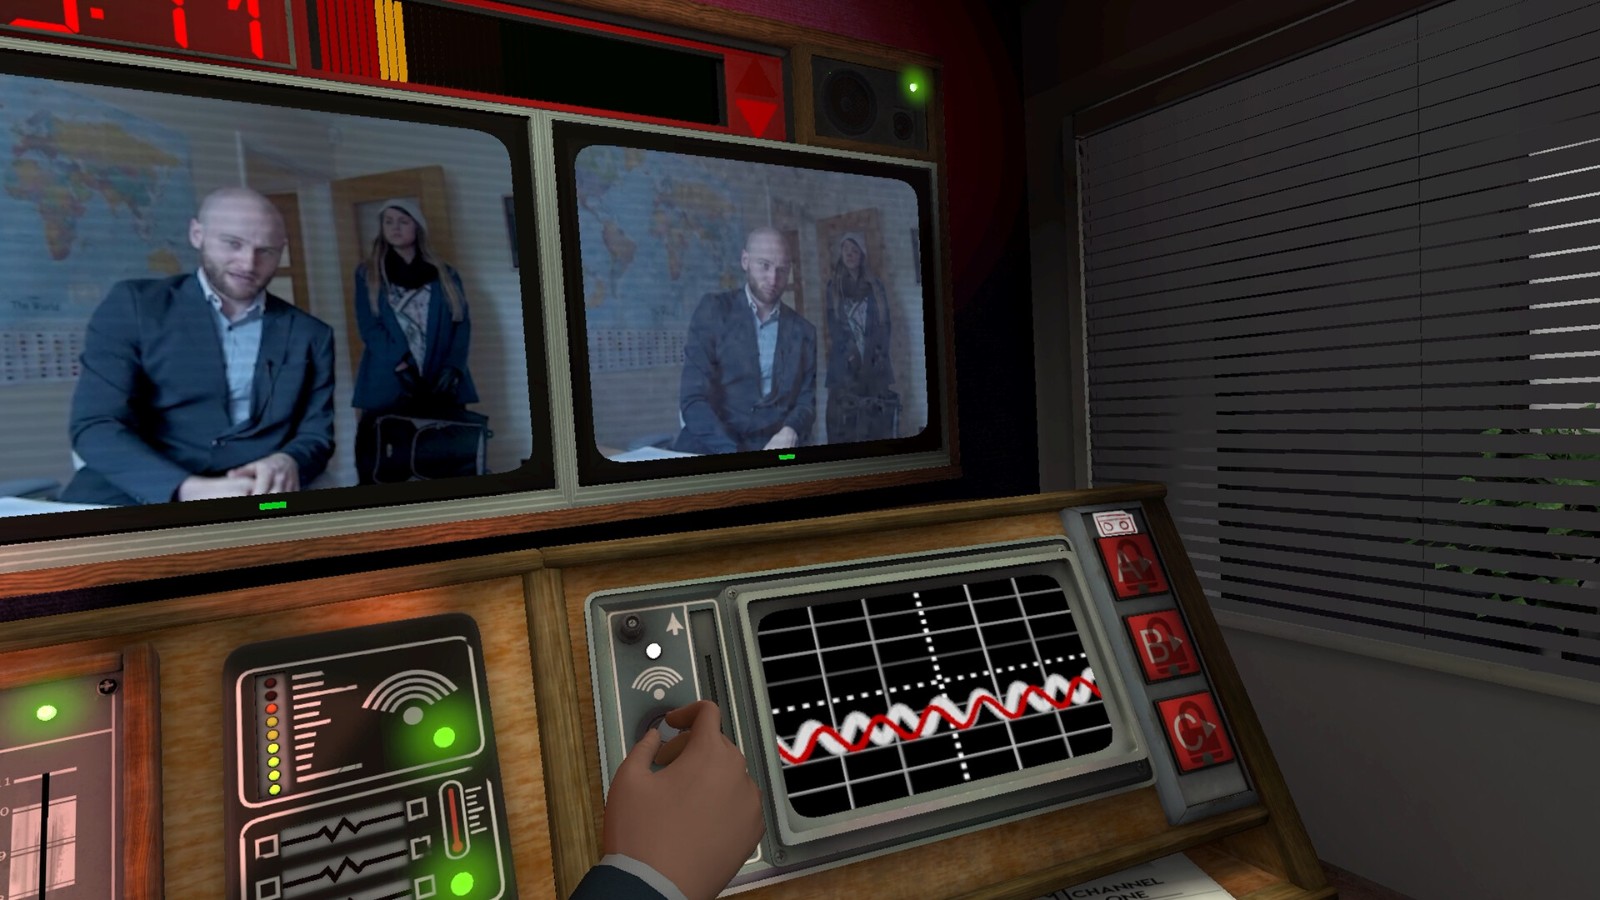 沉浸式模拟影像游戏《不予播出》VR版 将于3月24日发售